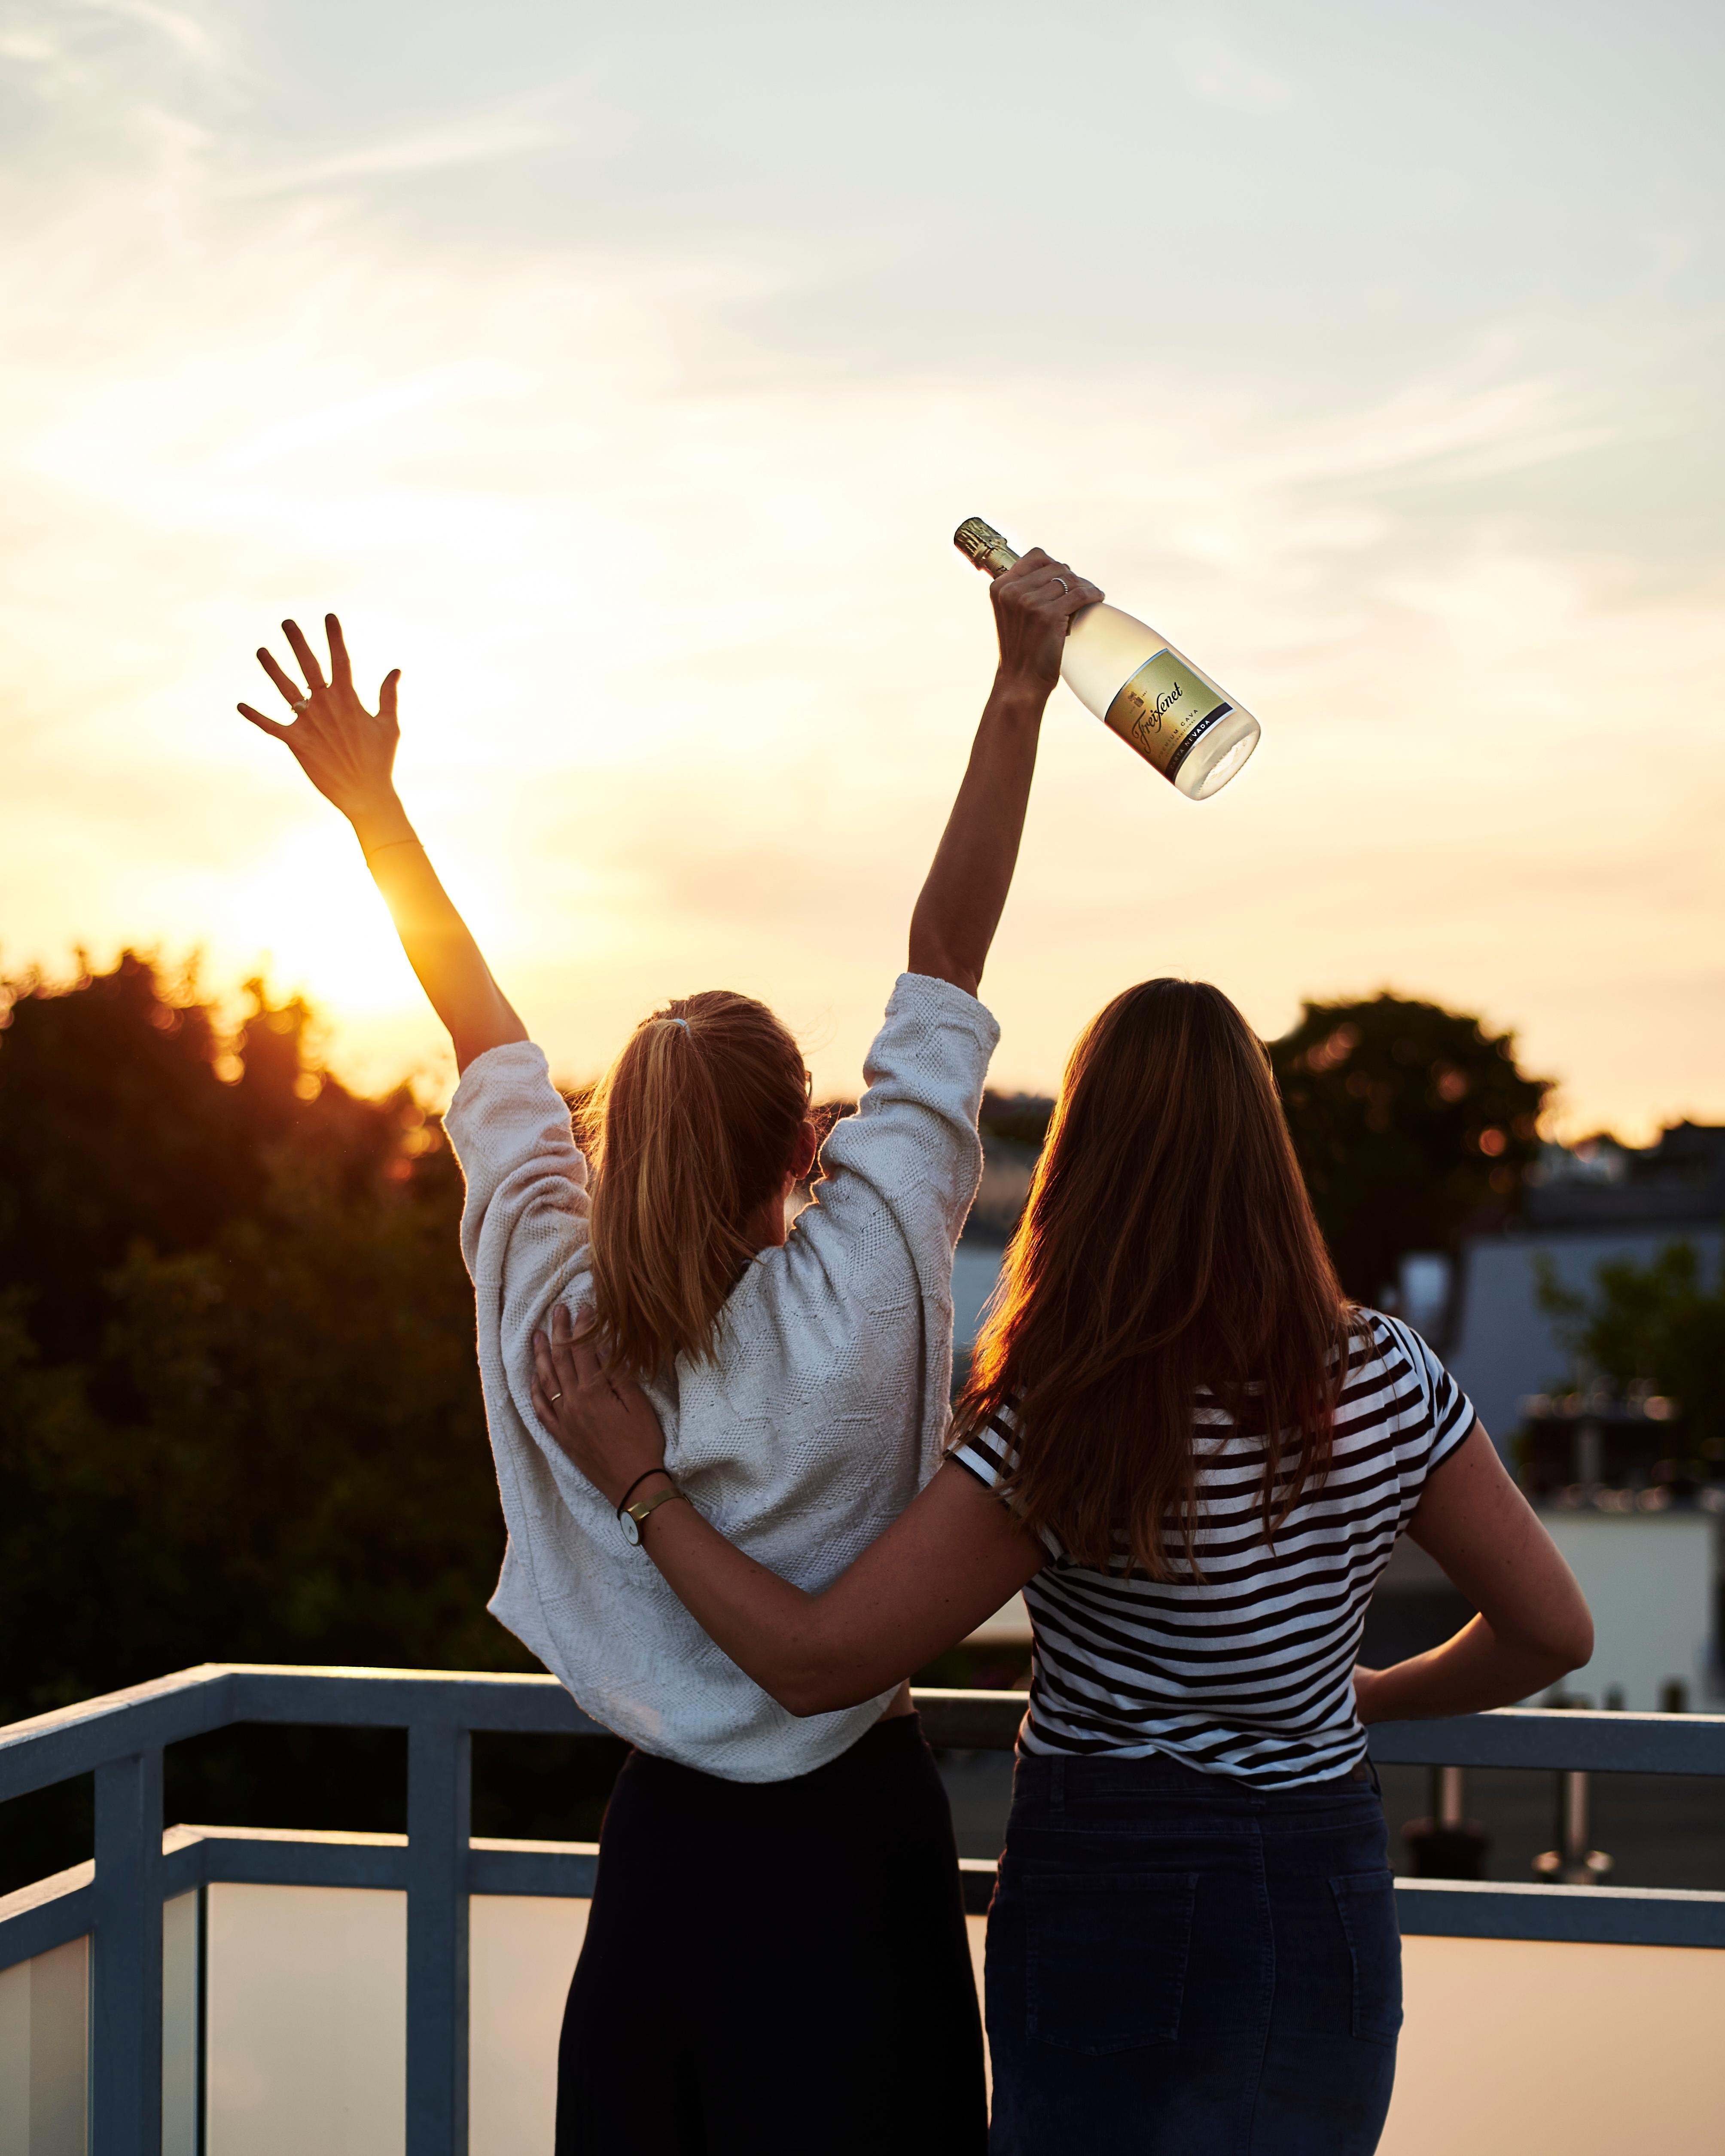 –Anzeige– Den Abend mit der besten Freundin auf einer Dachterrasse genießen – was gibt es Schöneres? #freundinnentag